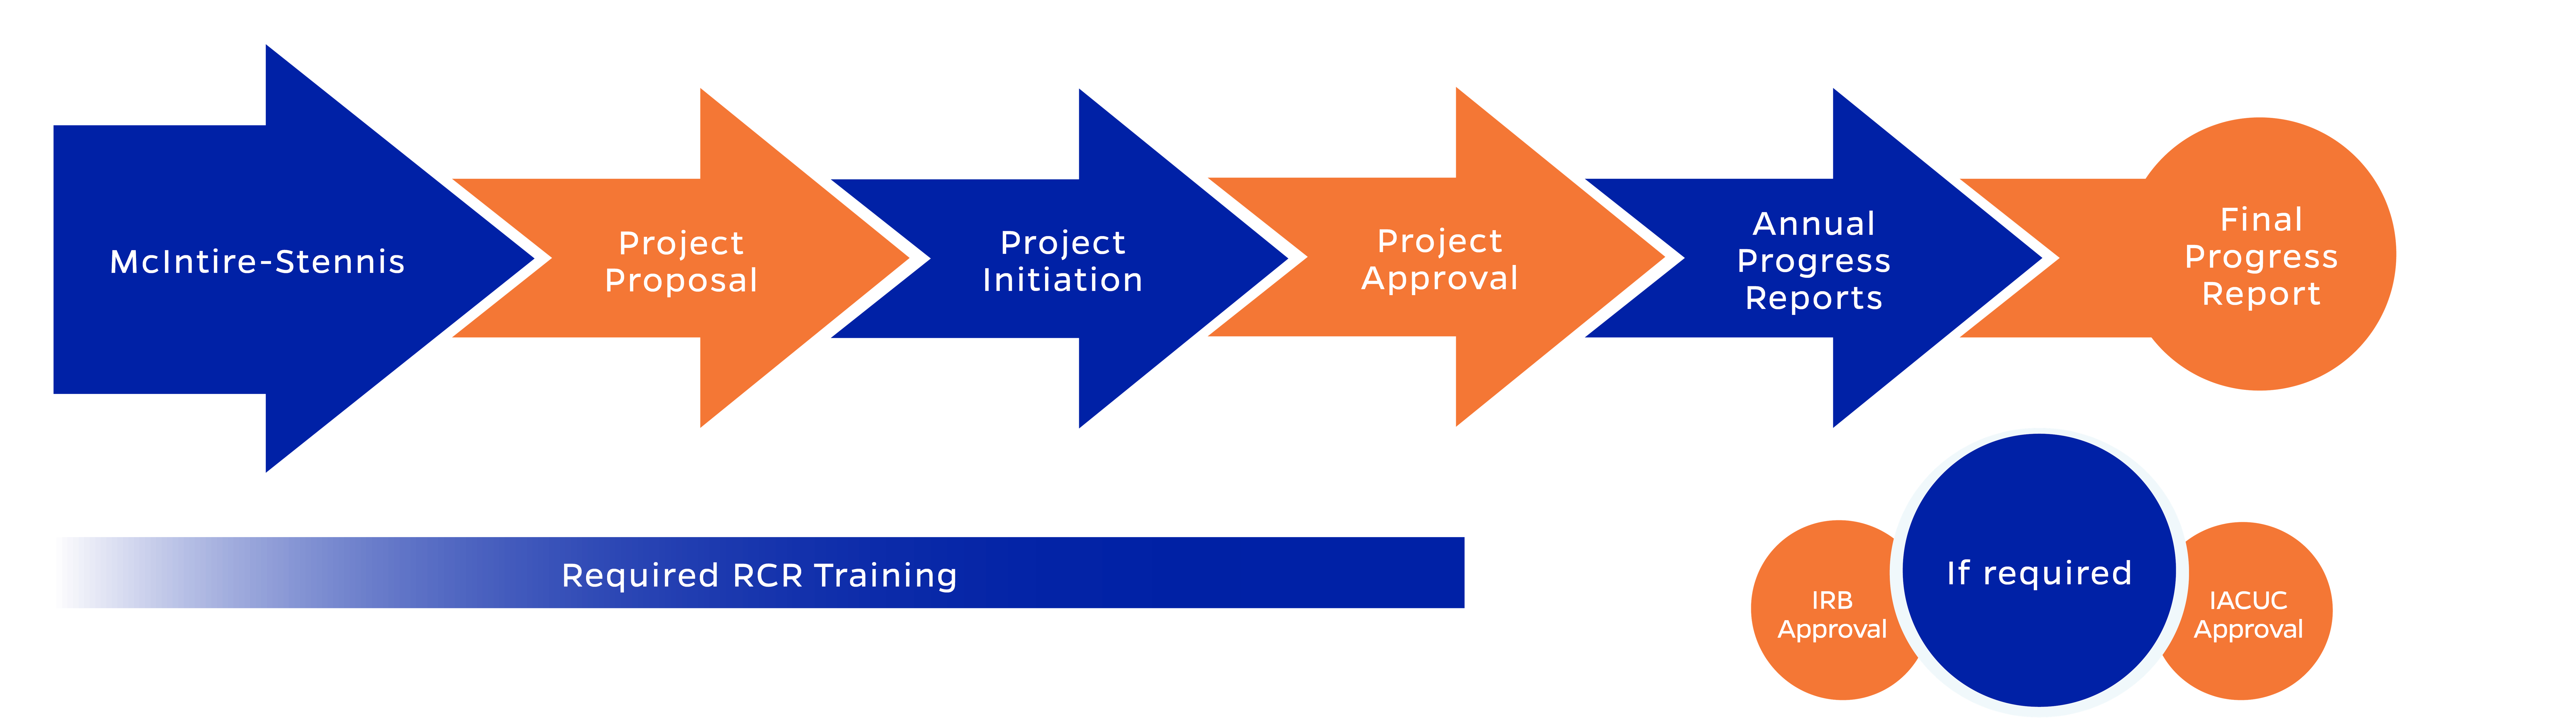 Flowchart demonstrating the process described below